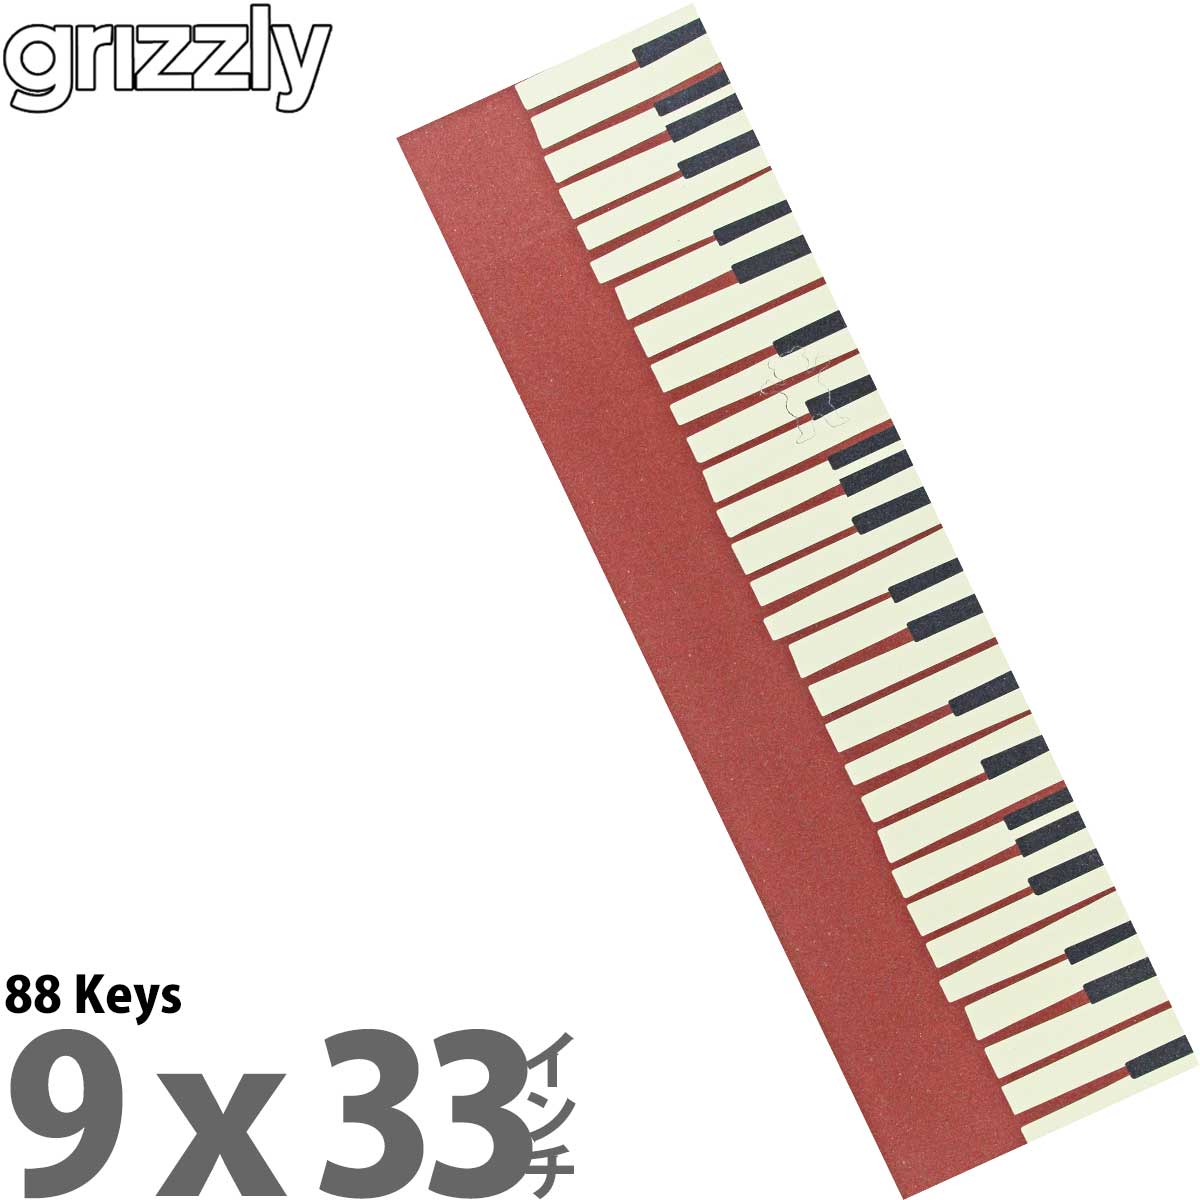 グリズリー スケボー デッキテープ Grizzly 88 Keys Griptape Skatebo...